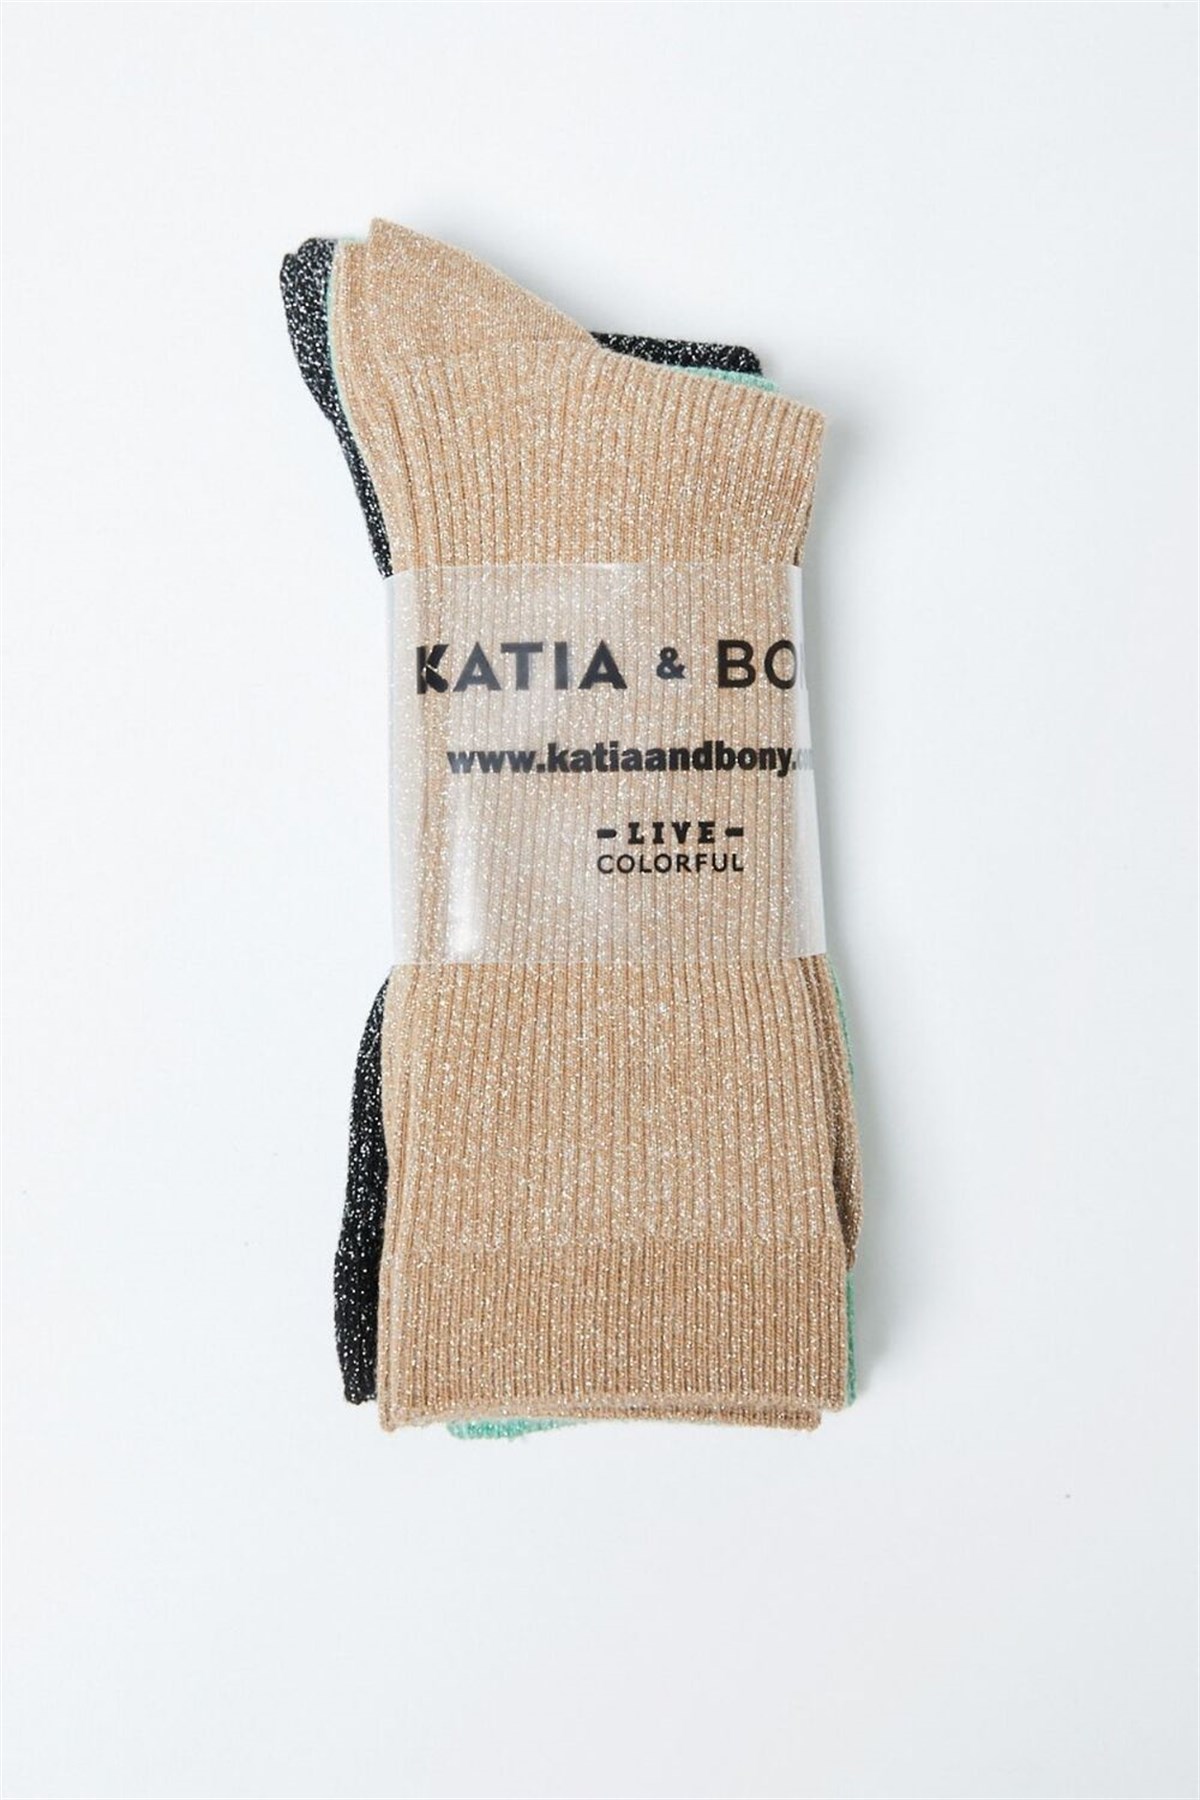 Katia and Bony 3 lü Paket Simli Kadın Soket Çorap Desenli. 2